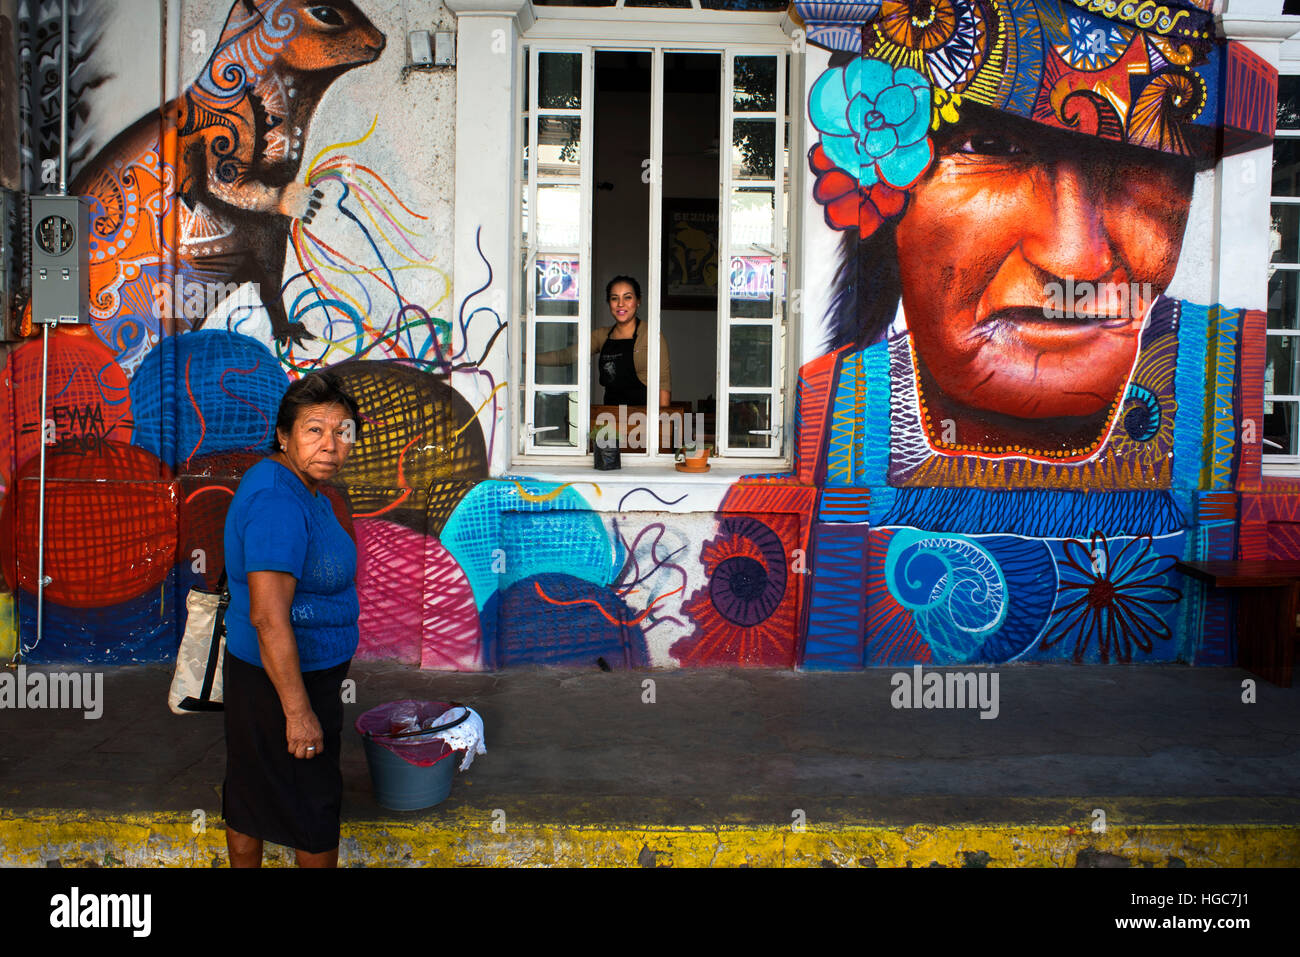 Graffiti wall and street scene in La Paz, Sea of Cortez, Baja California, Mexico. Stock Photo